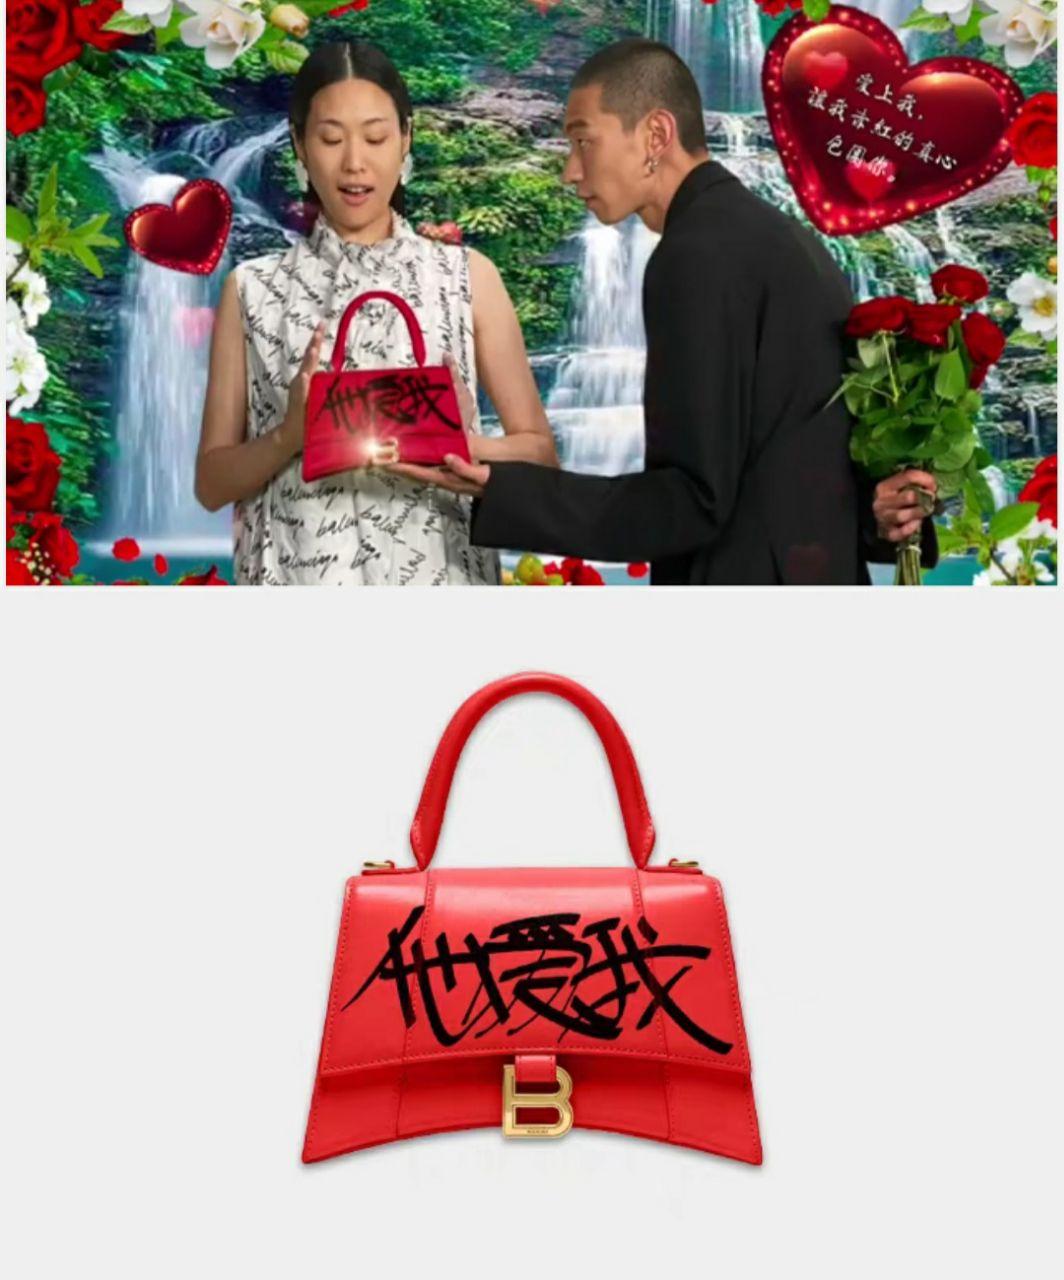 Louis Vuitton, Estée Lauder, Balenciaga Tap Into China's 'I Love